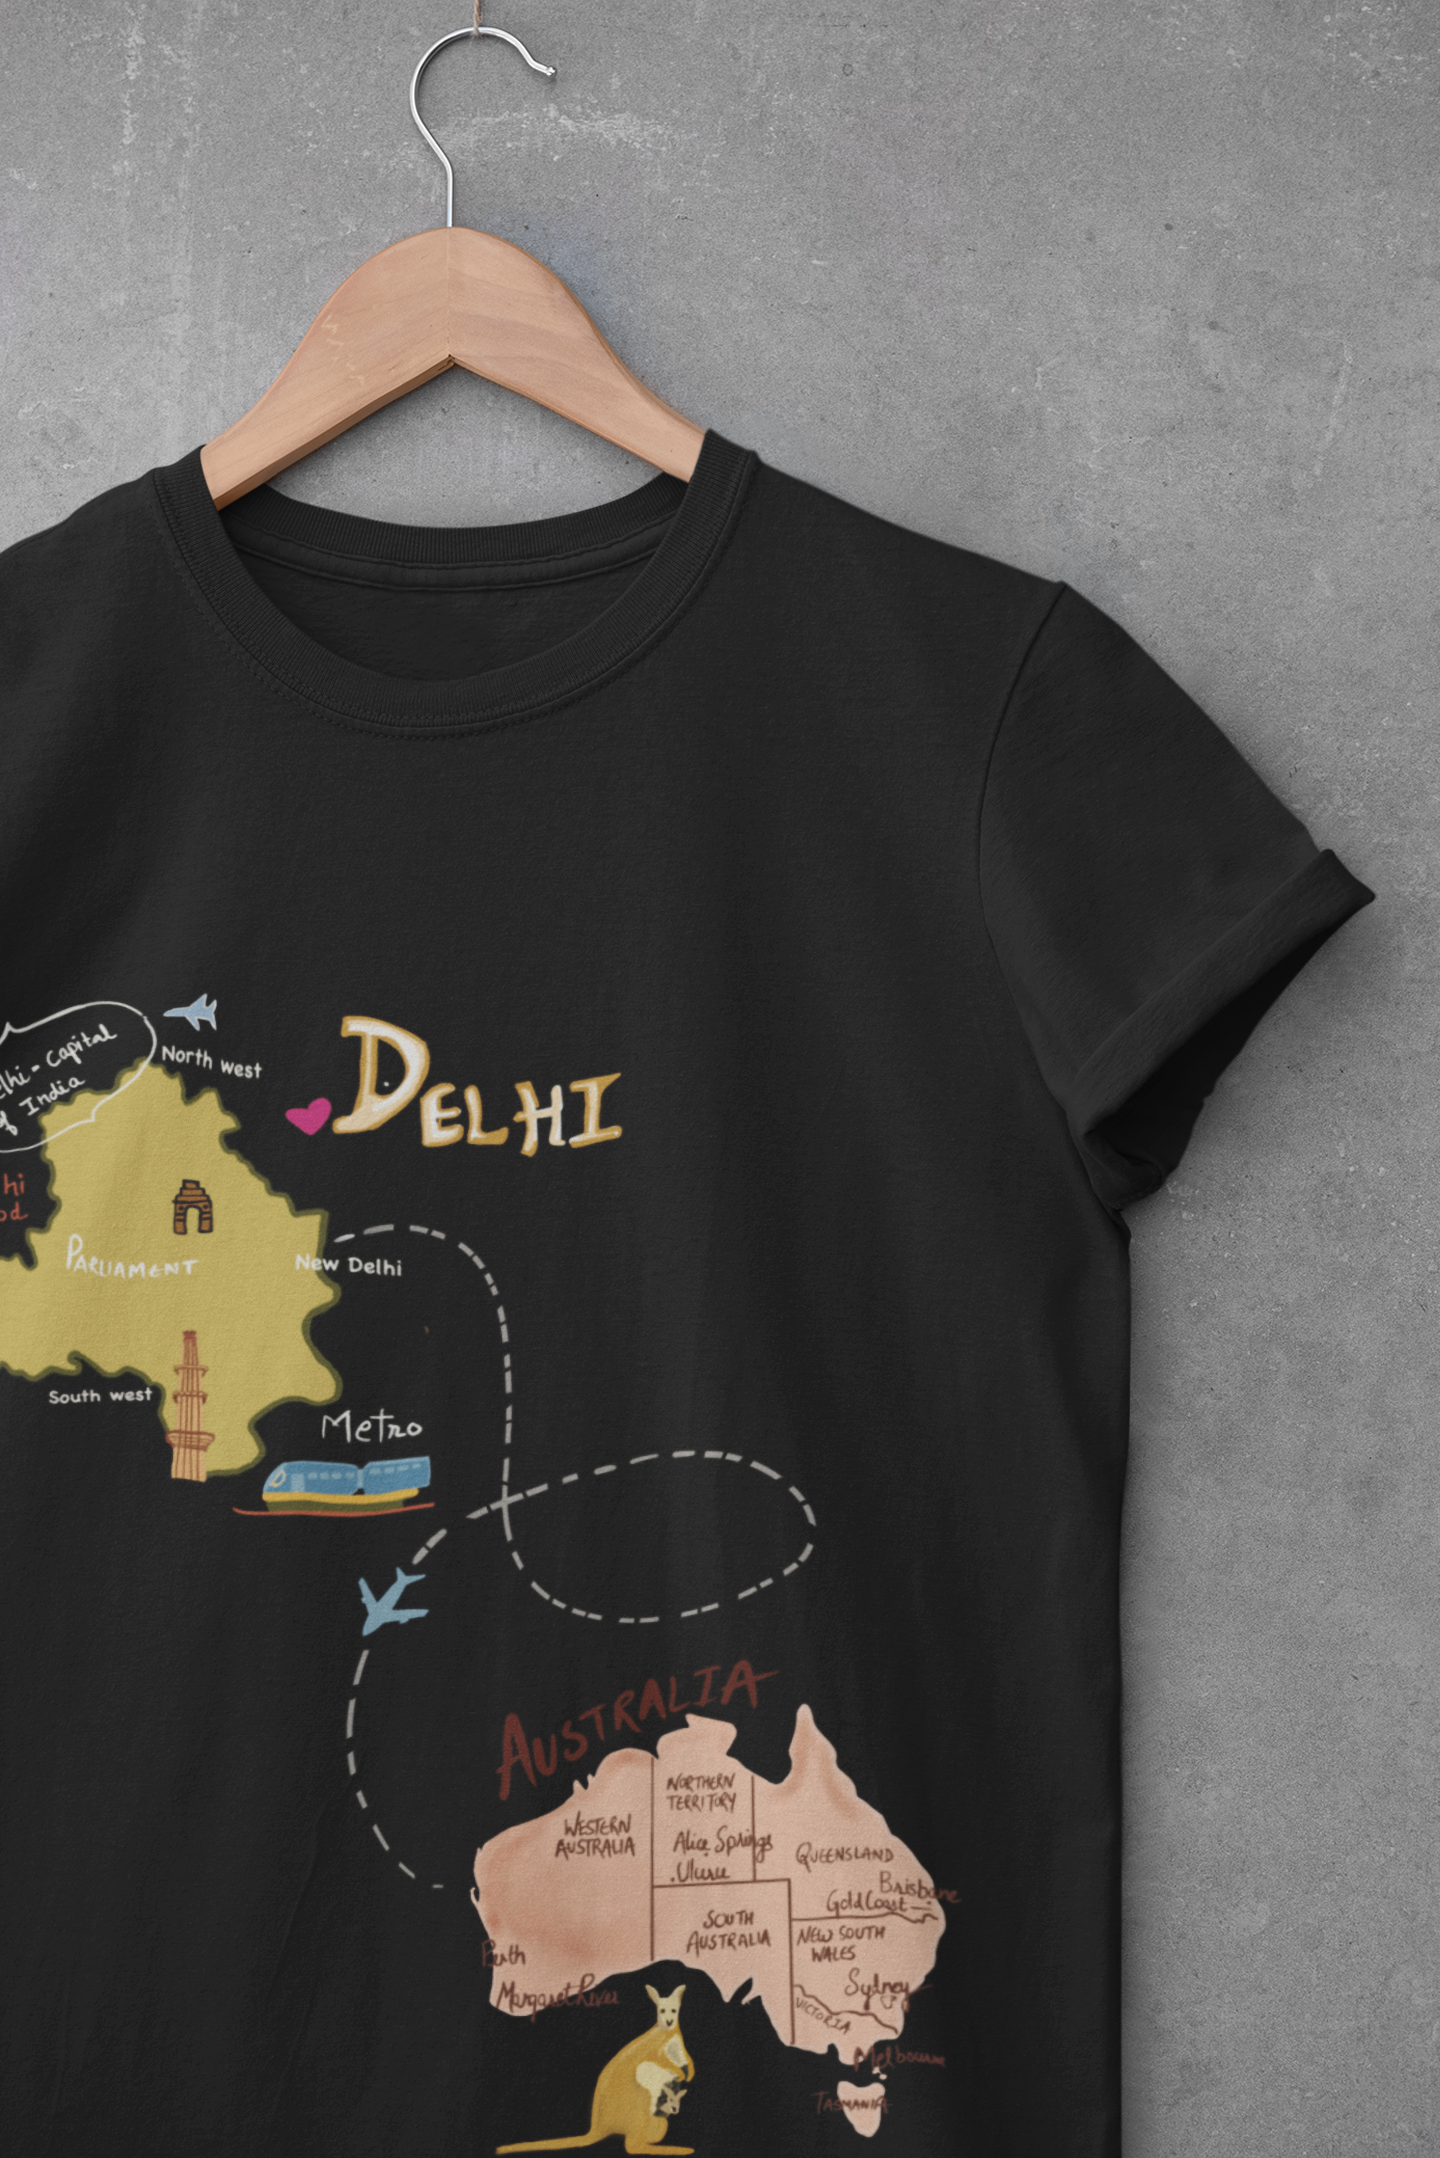 DELHI TO AUSTRALIA T-shirt